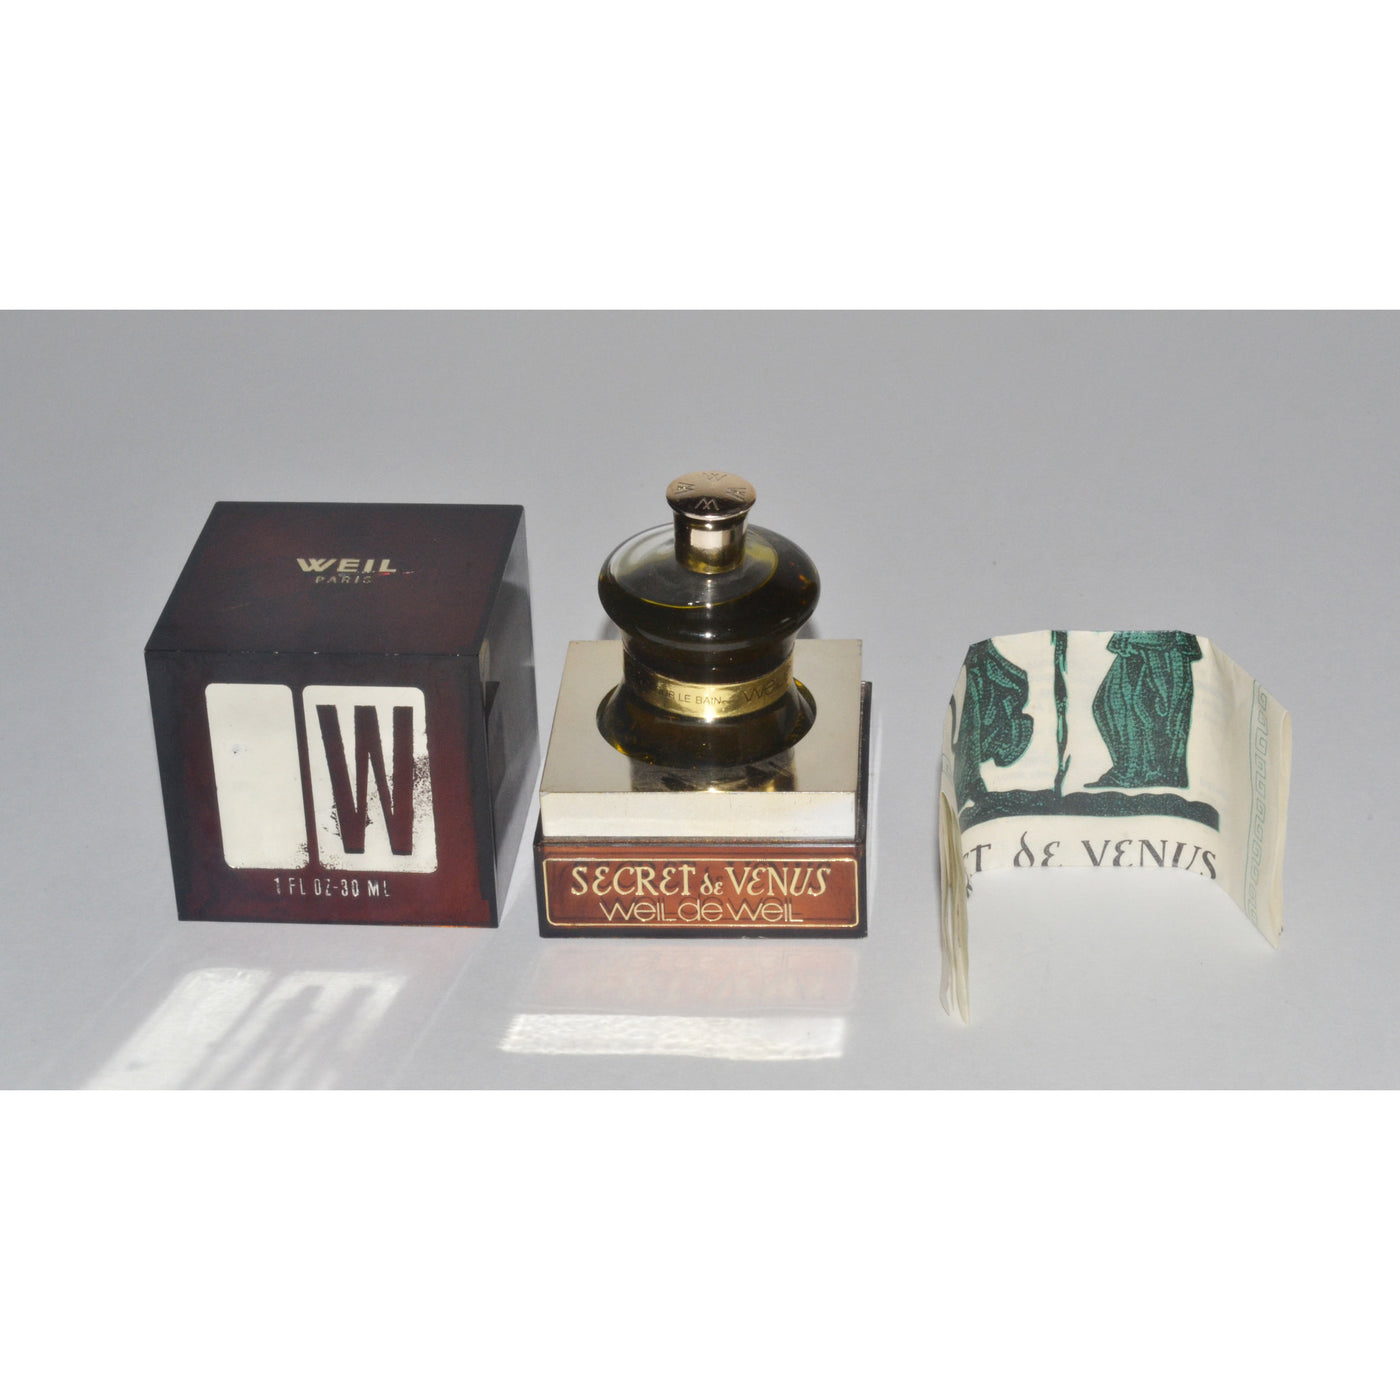 Vintage Secret de Venus Bath Perfume Oil By Weil